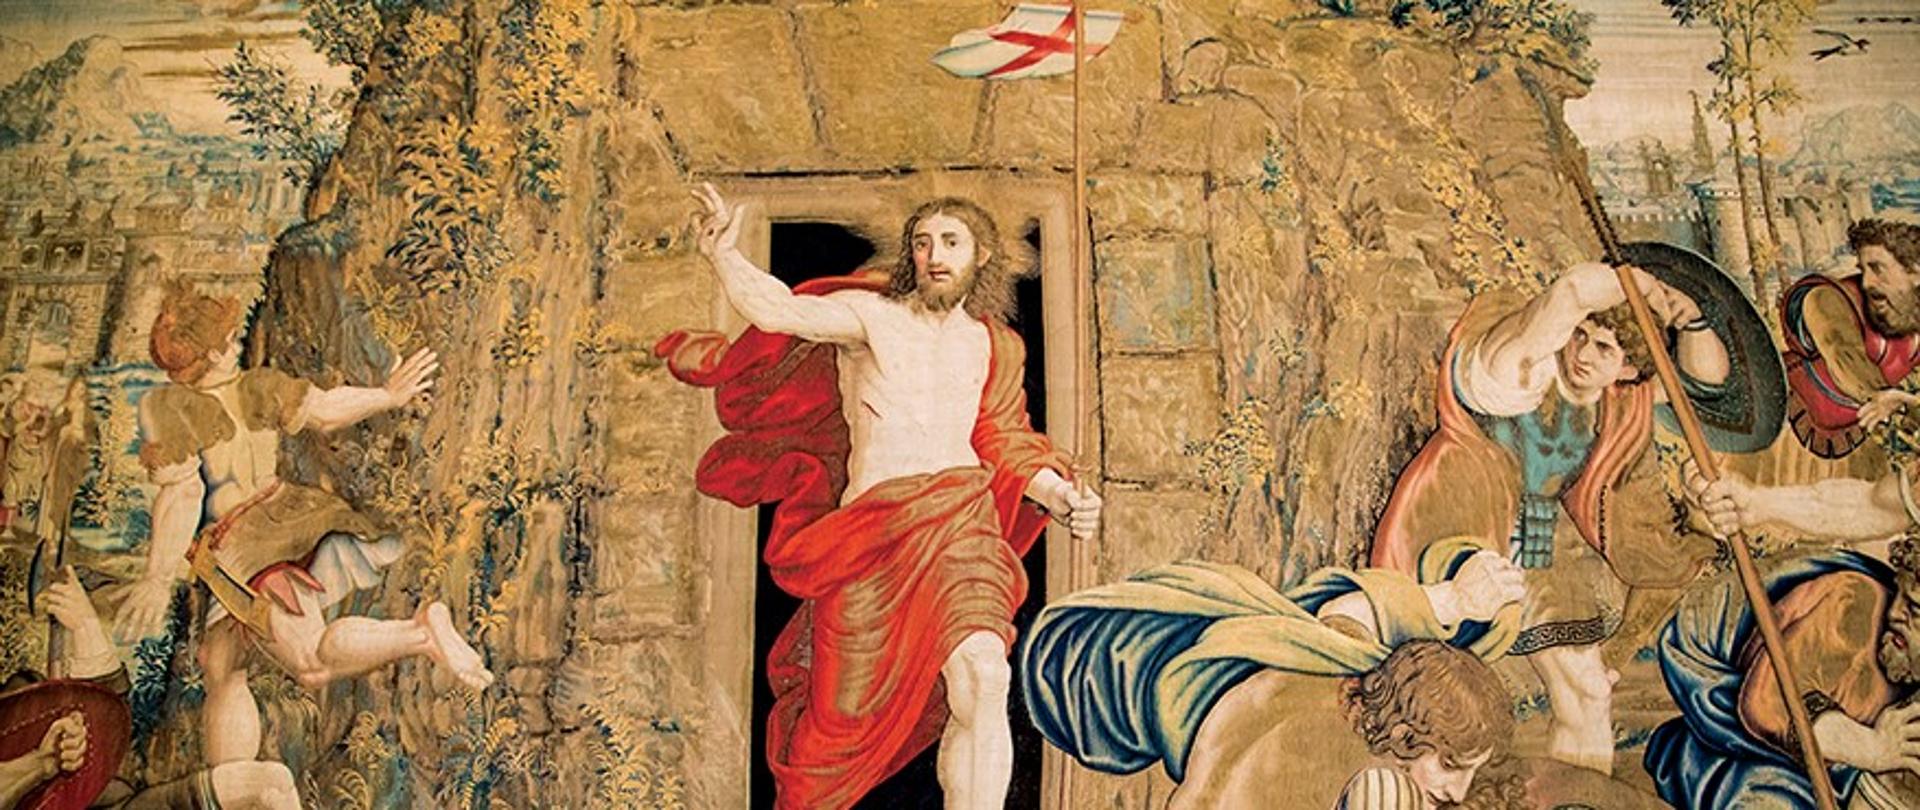 Zmartwychwstały Chrystus Wychodzi w grobu, arras z Galerii Arrasów Muzeów Watykańskich